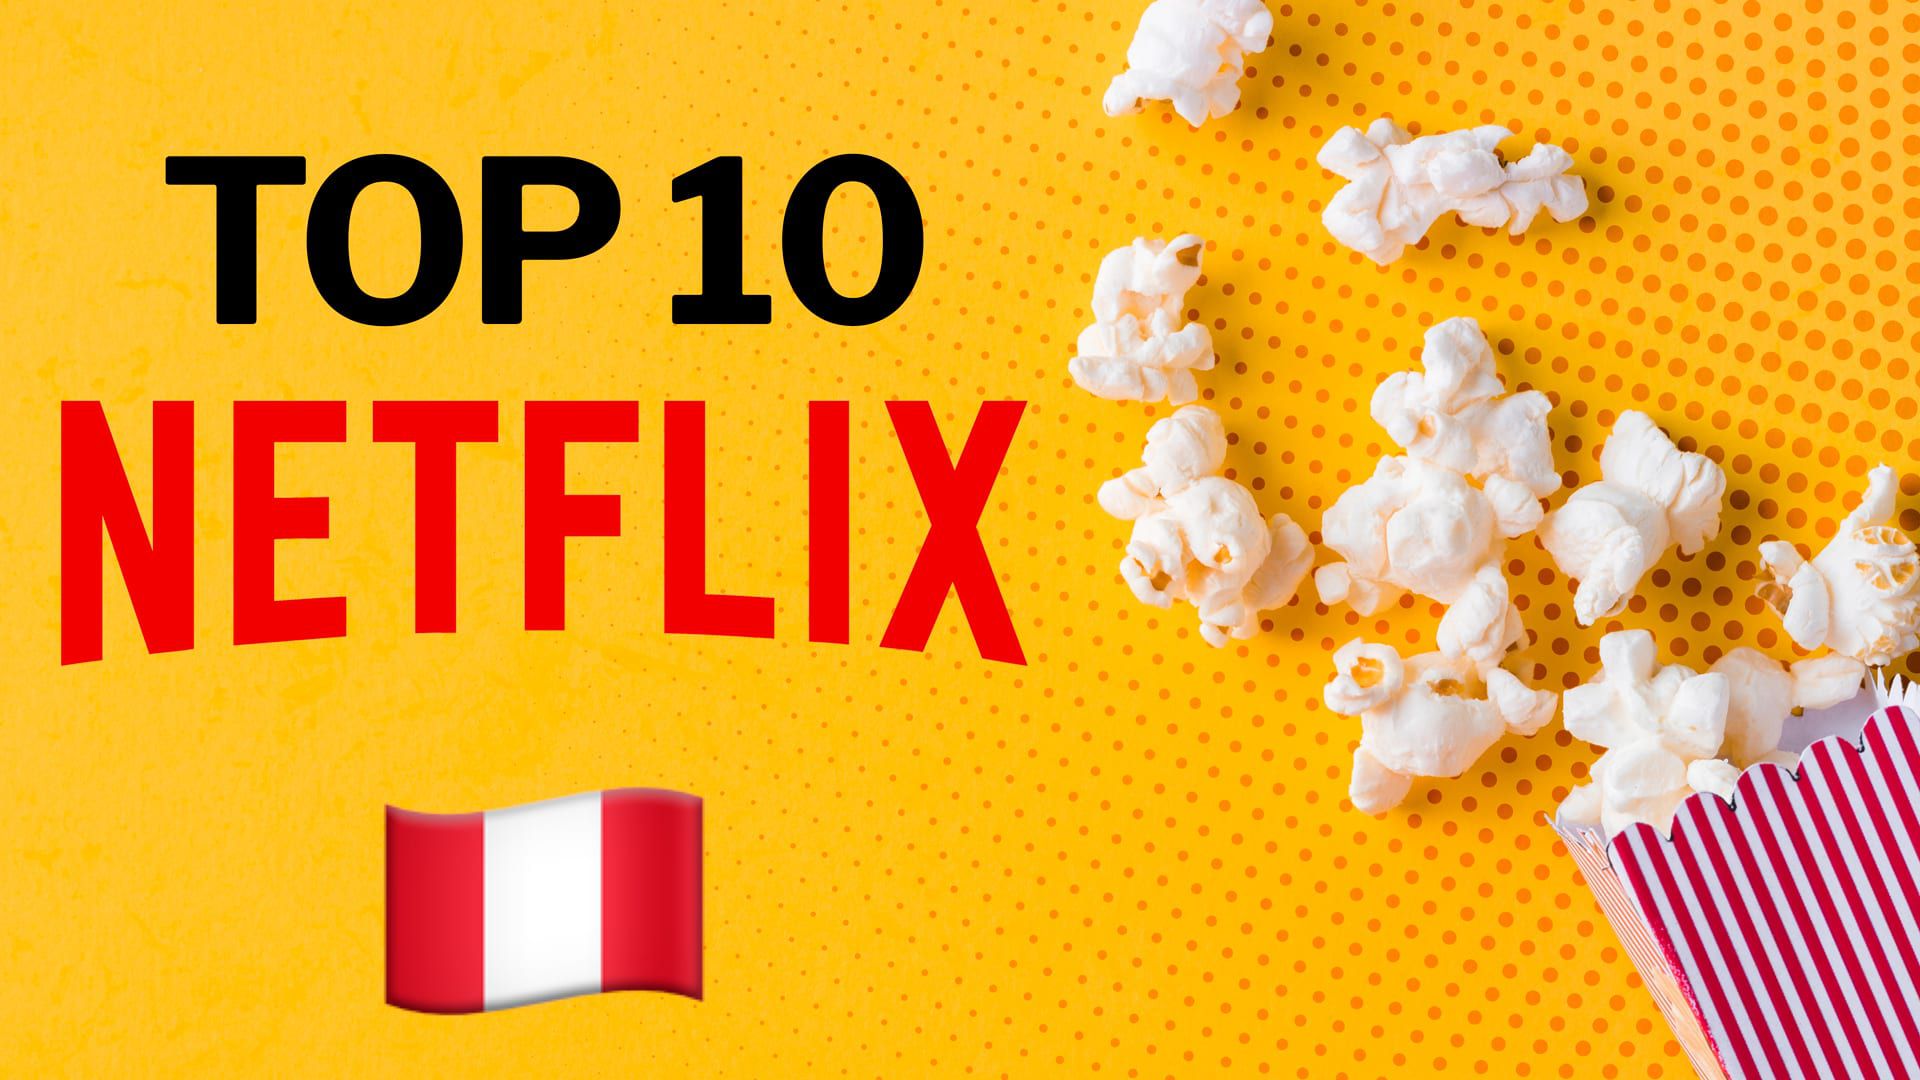 Aunque ha perdido suscriptores, Netflix sigue estando entre las plataformas favoritas del público mientras apuesta por sus grandes producciones. (Infobae)